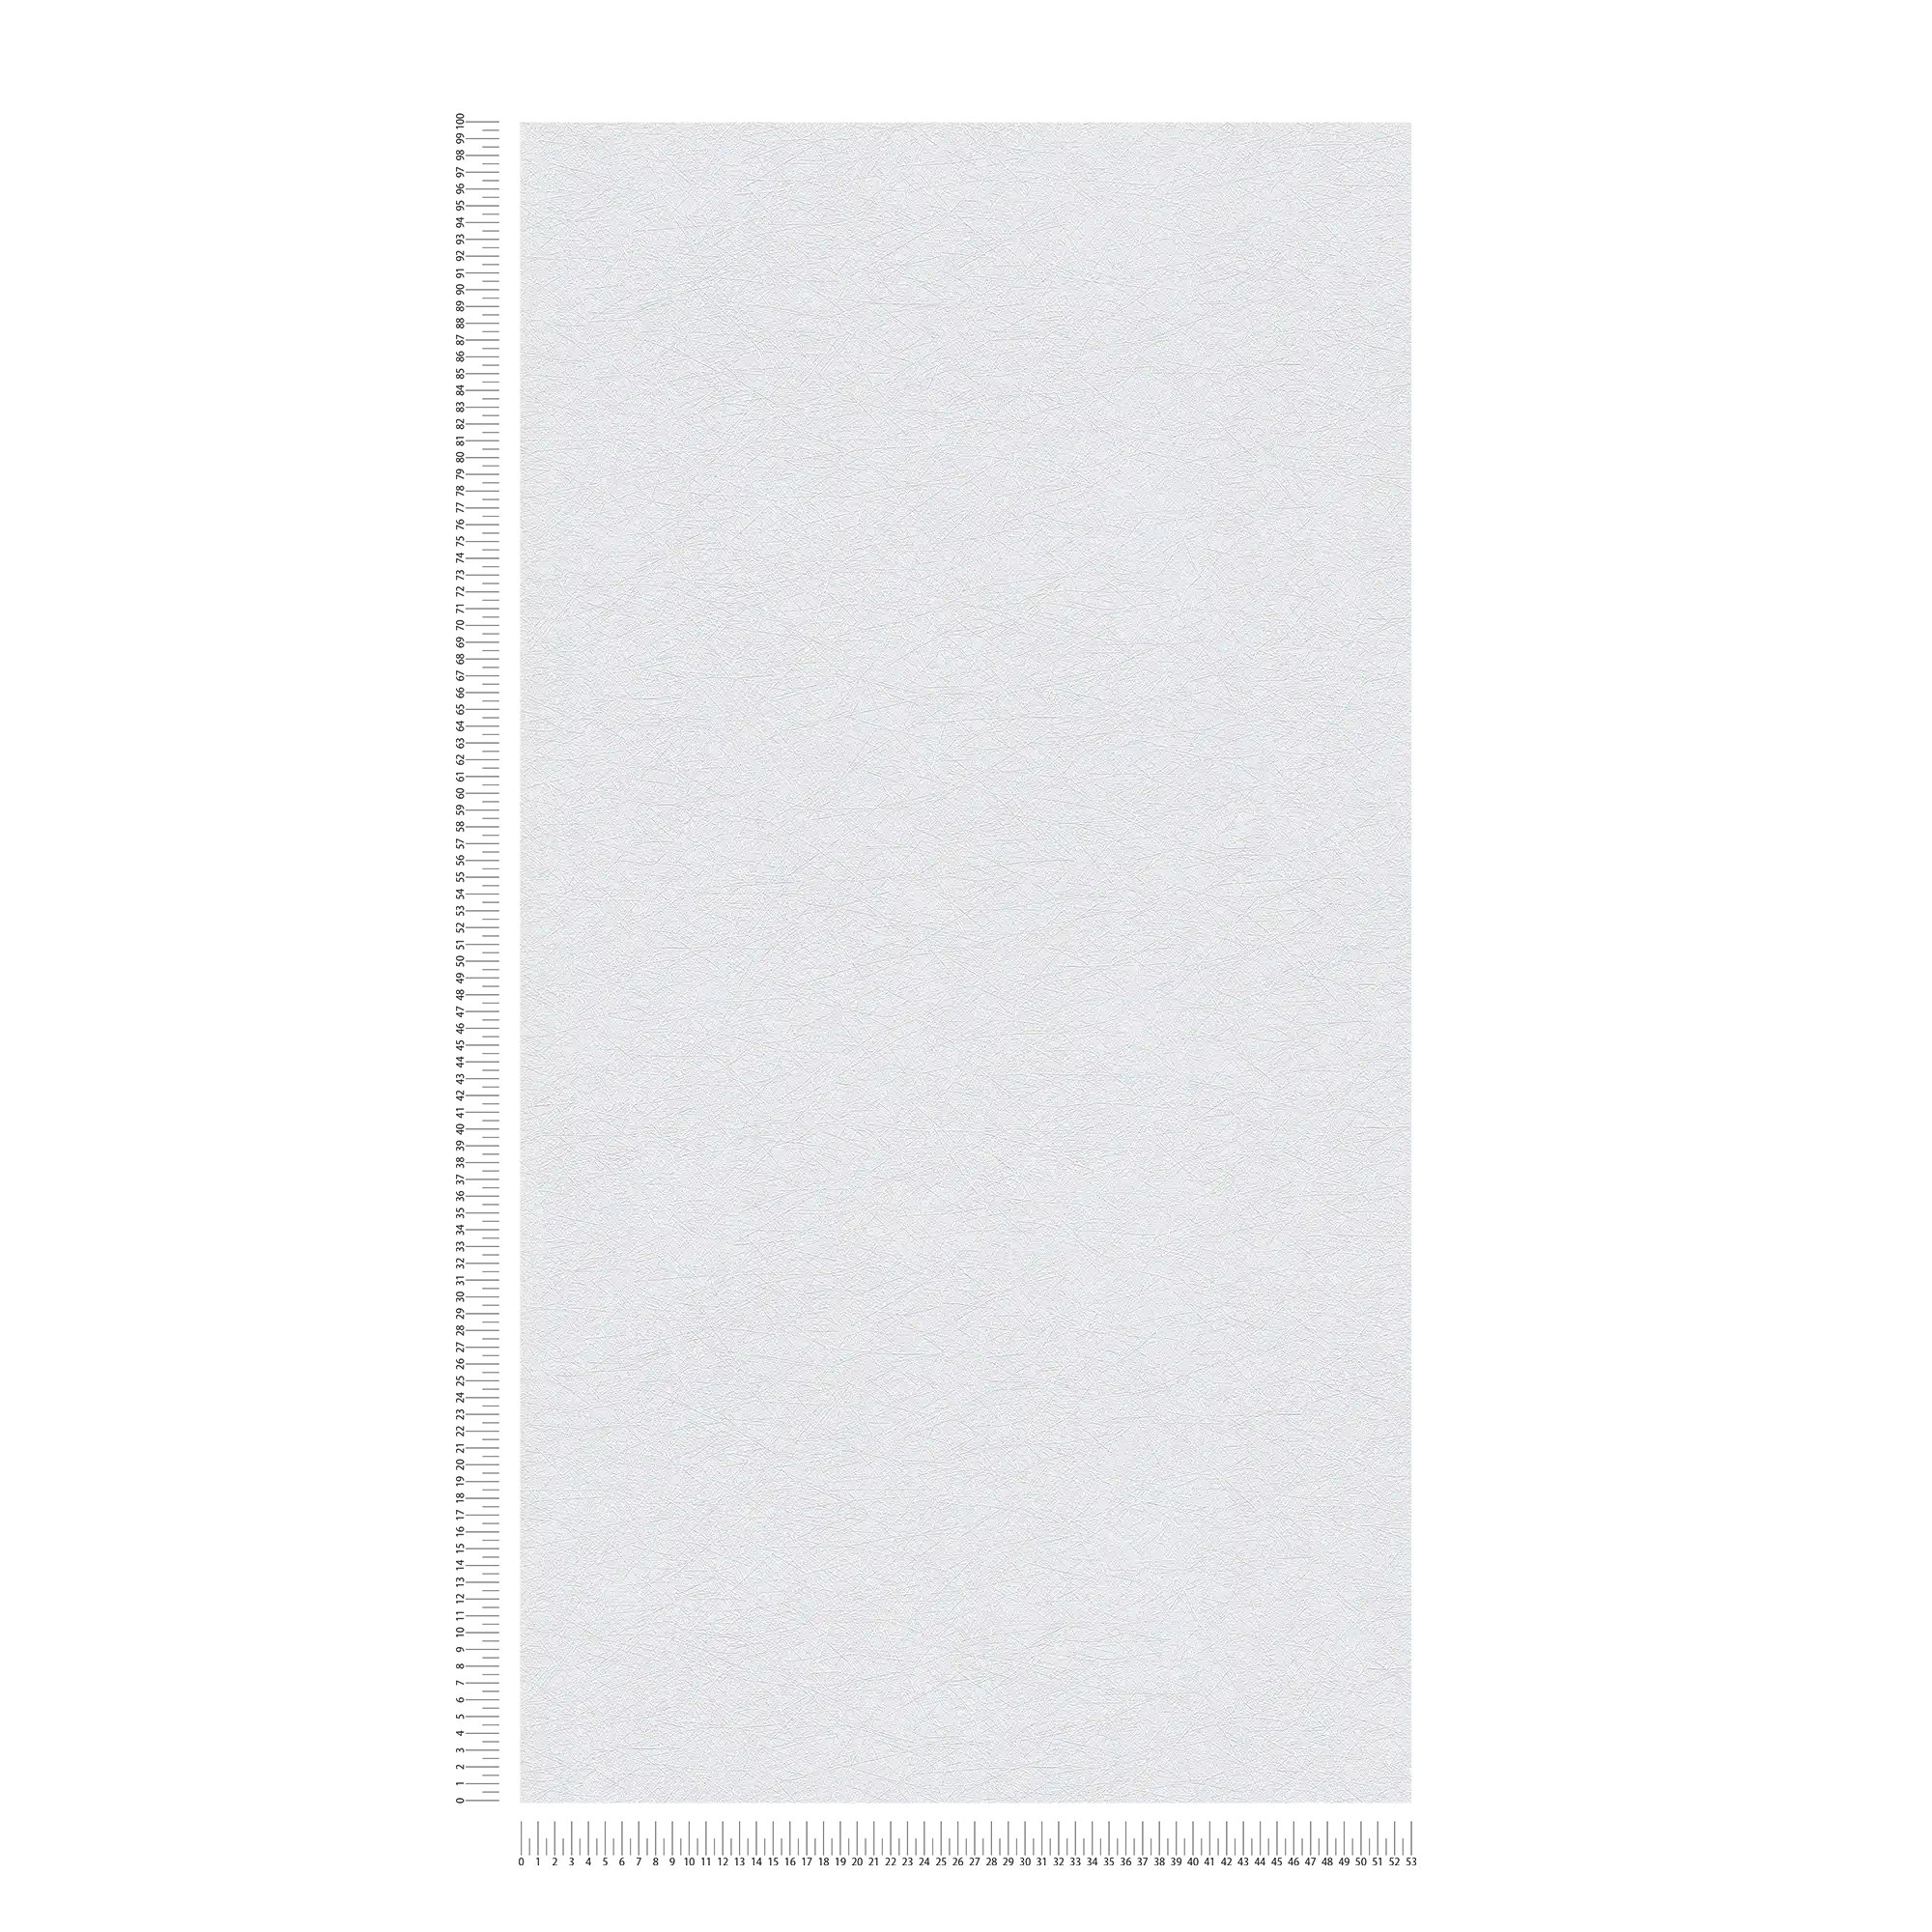             Carta da parati testurizzata effetto gesso monocolore scintillante - grigio, argento
        